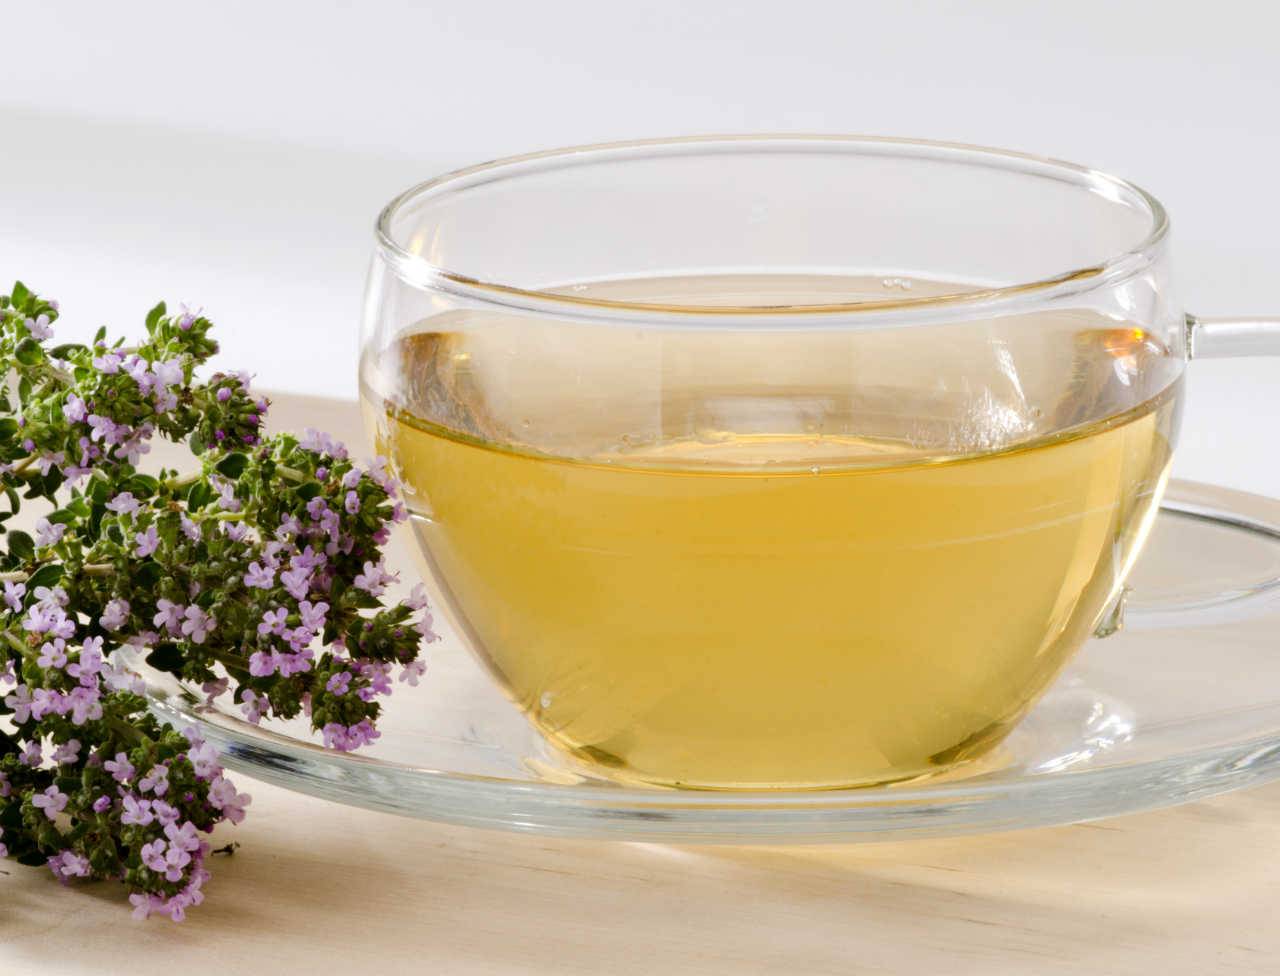 Шалфей лечебные свойства, польза и вред чая, исследования, рецепты